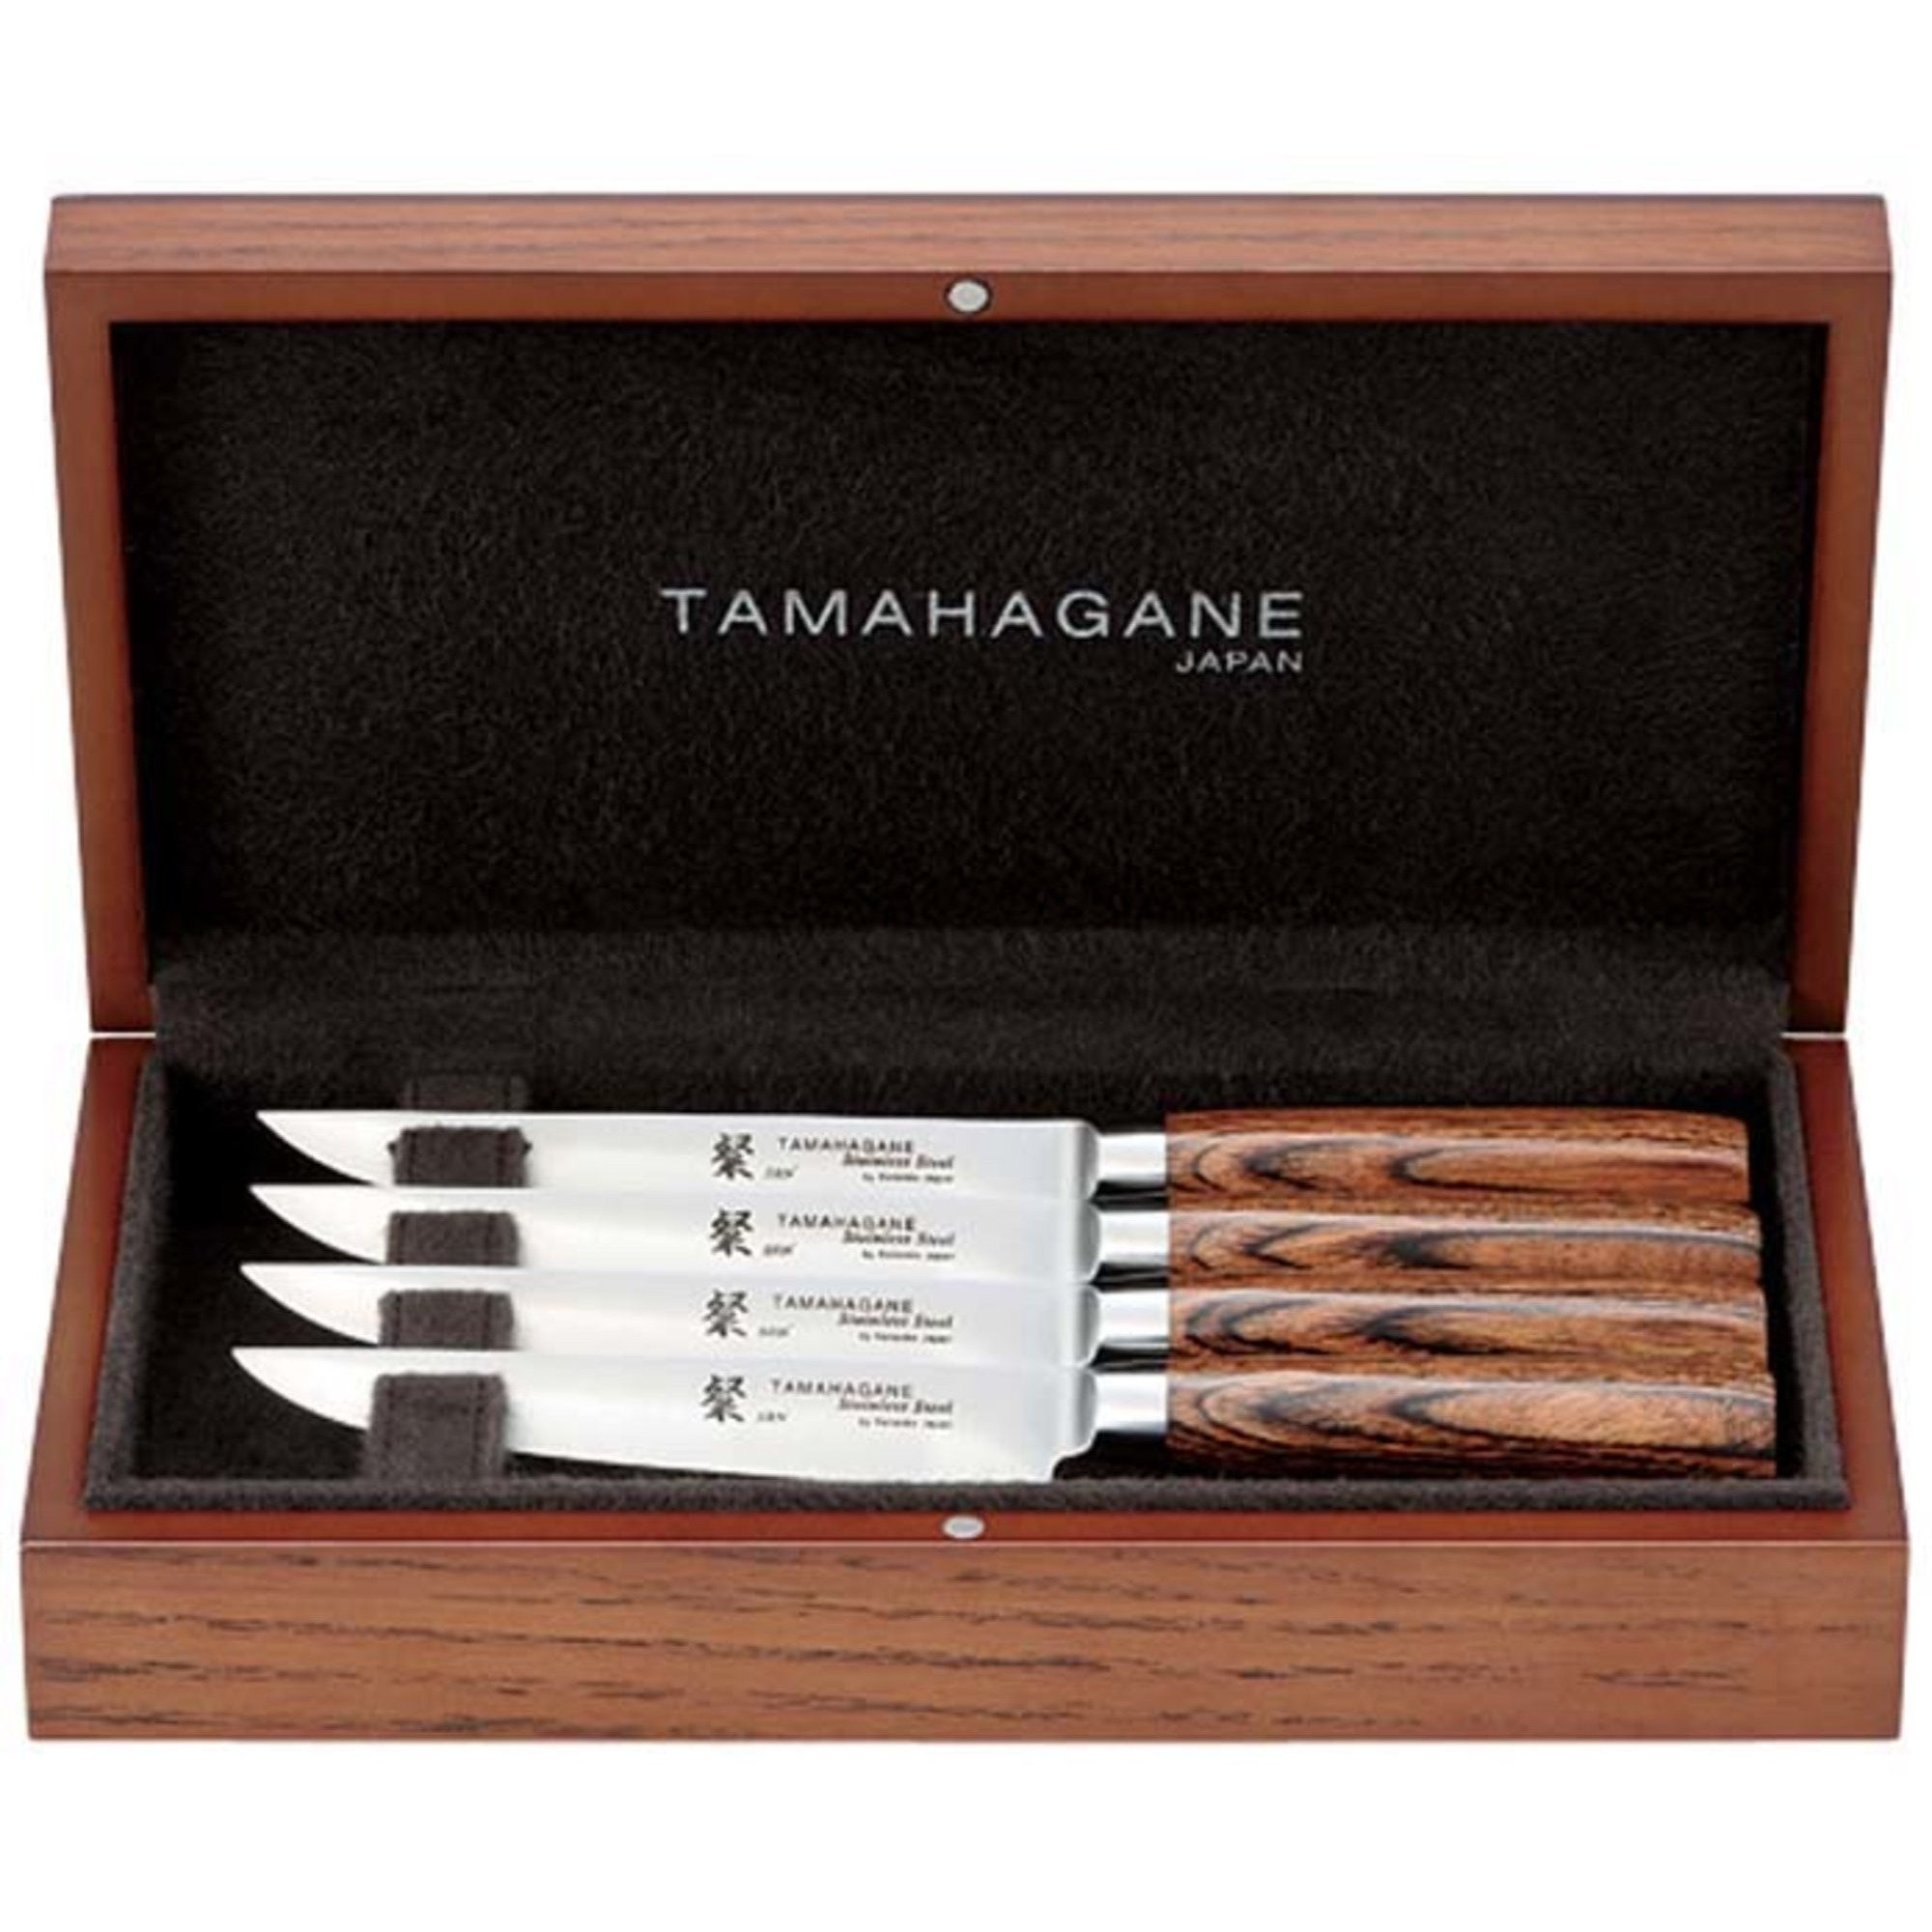 Tamahagane SAN Steakknive 4 stk. 12,5 cm i æske